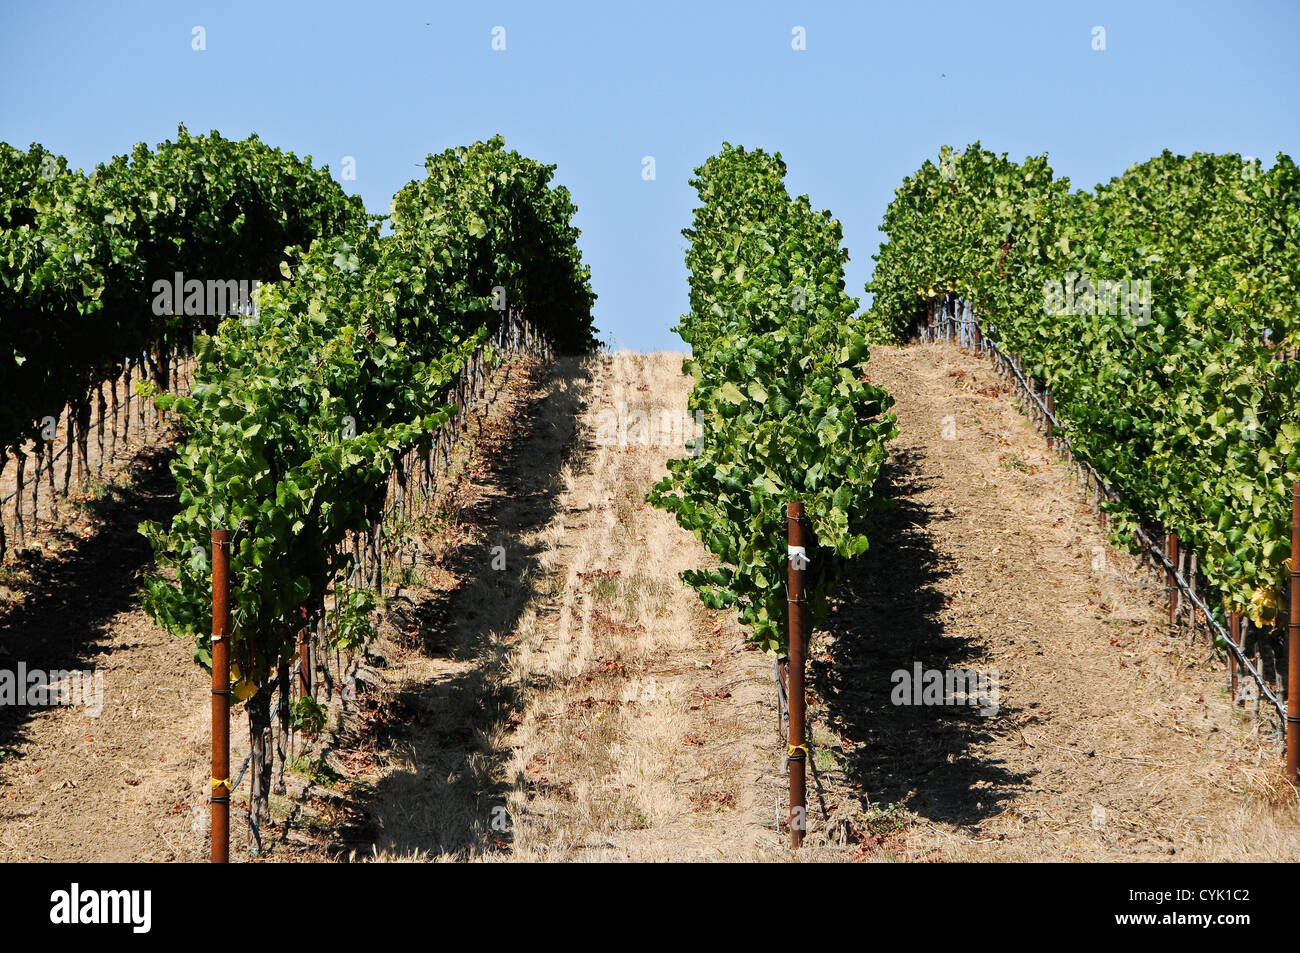 La maturation des raisins sur la vigne Banque D'Images